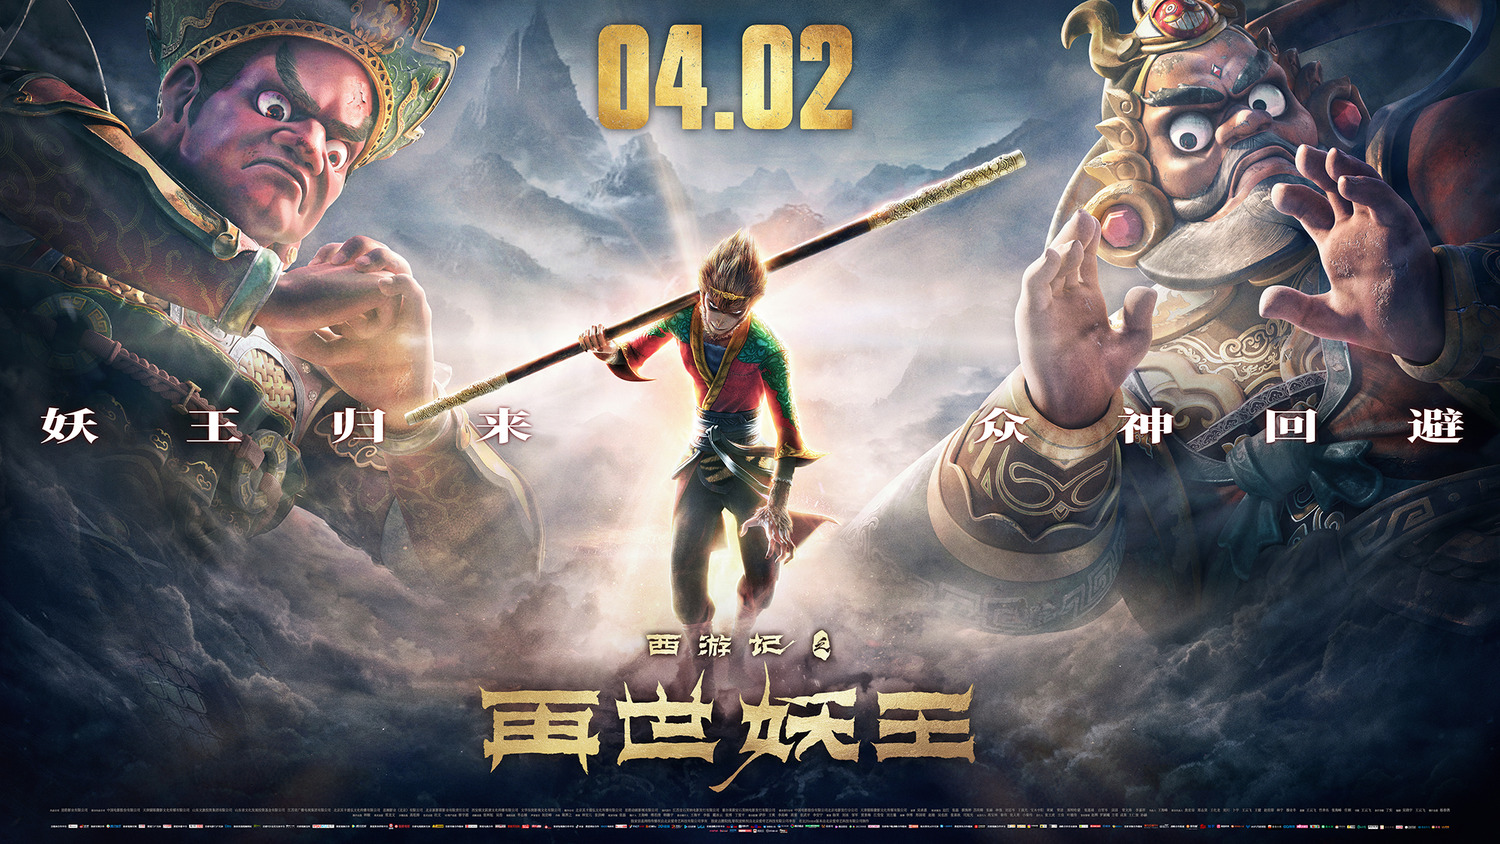 Extra Large Movie Poster Image for Xi You Ji Zhi Zai Shi Yao Wang (#21 of 21)